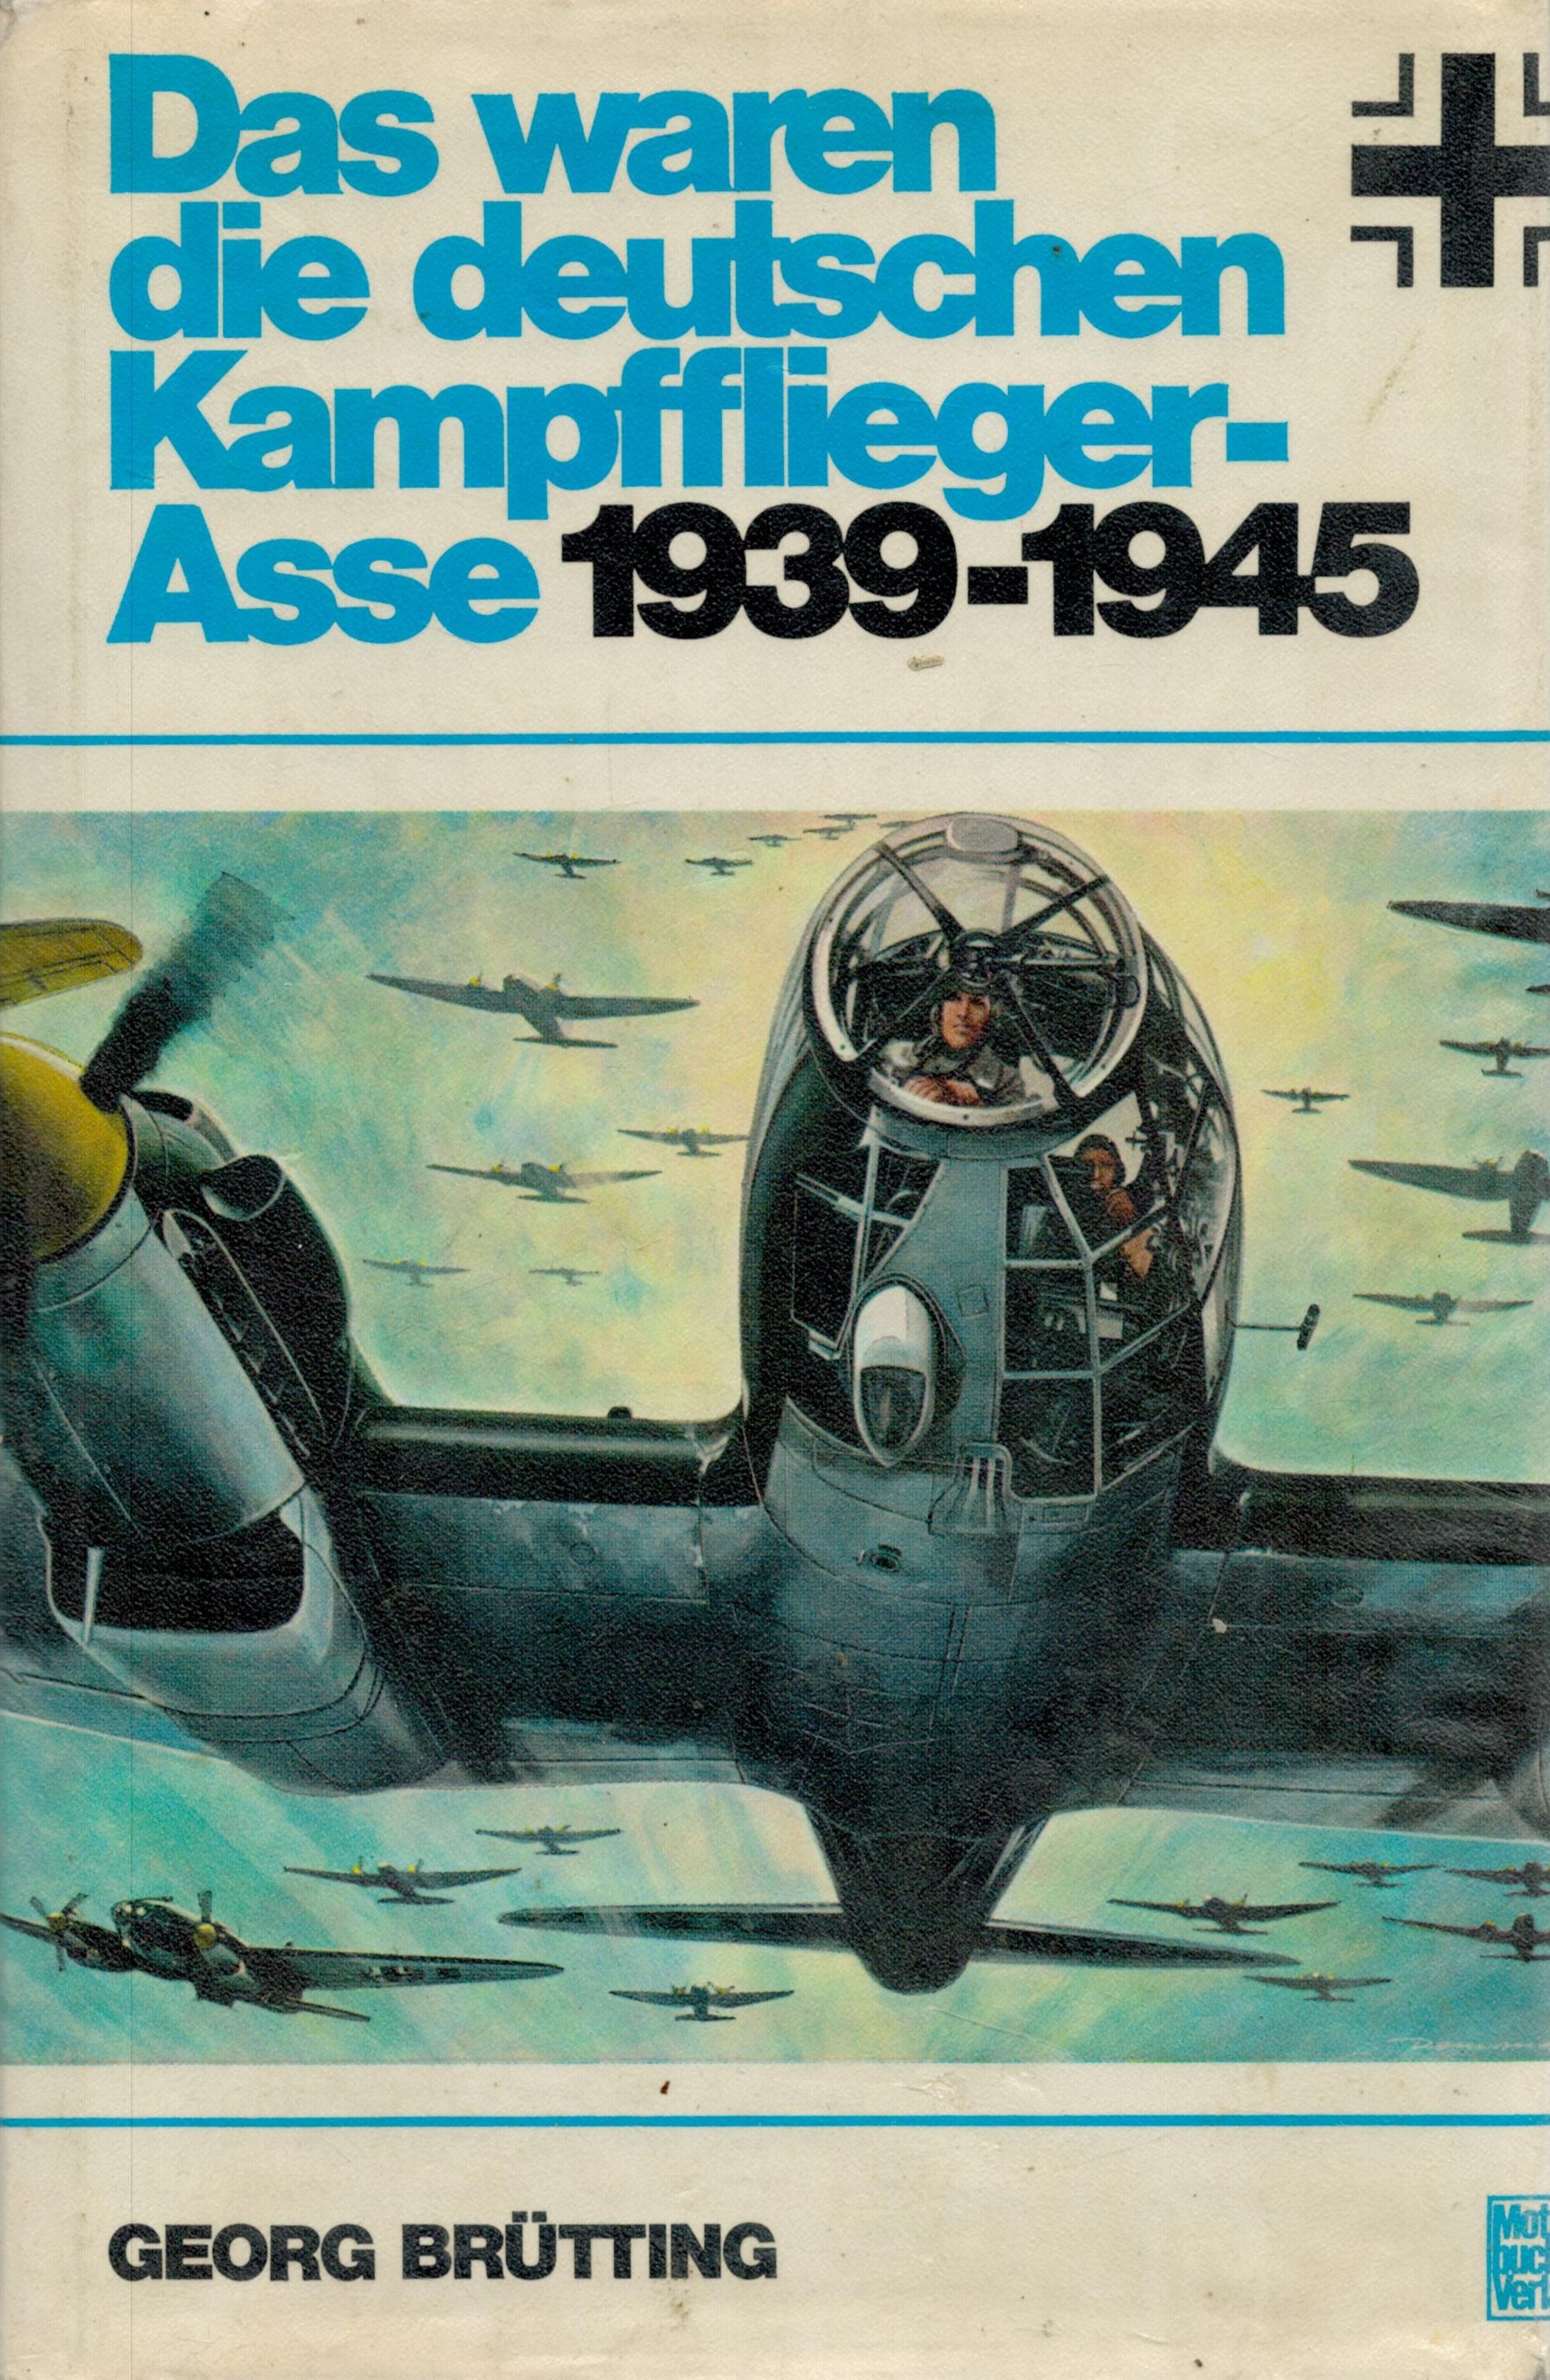 Das Waren Die Deutschen Kampfflieger Asse 1939 1945 1st Edition Hardback Book by Georg Brutting.